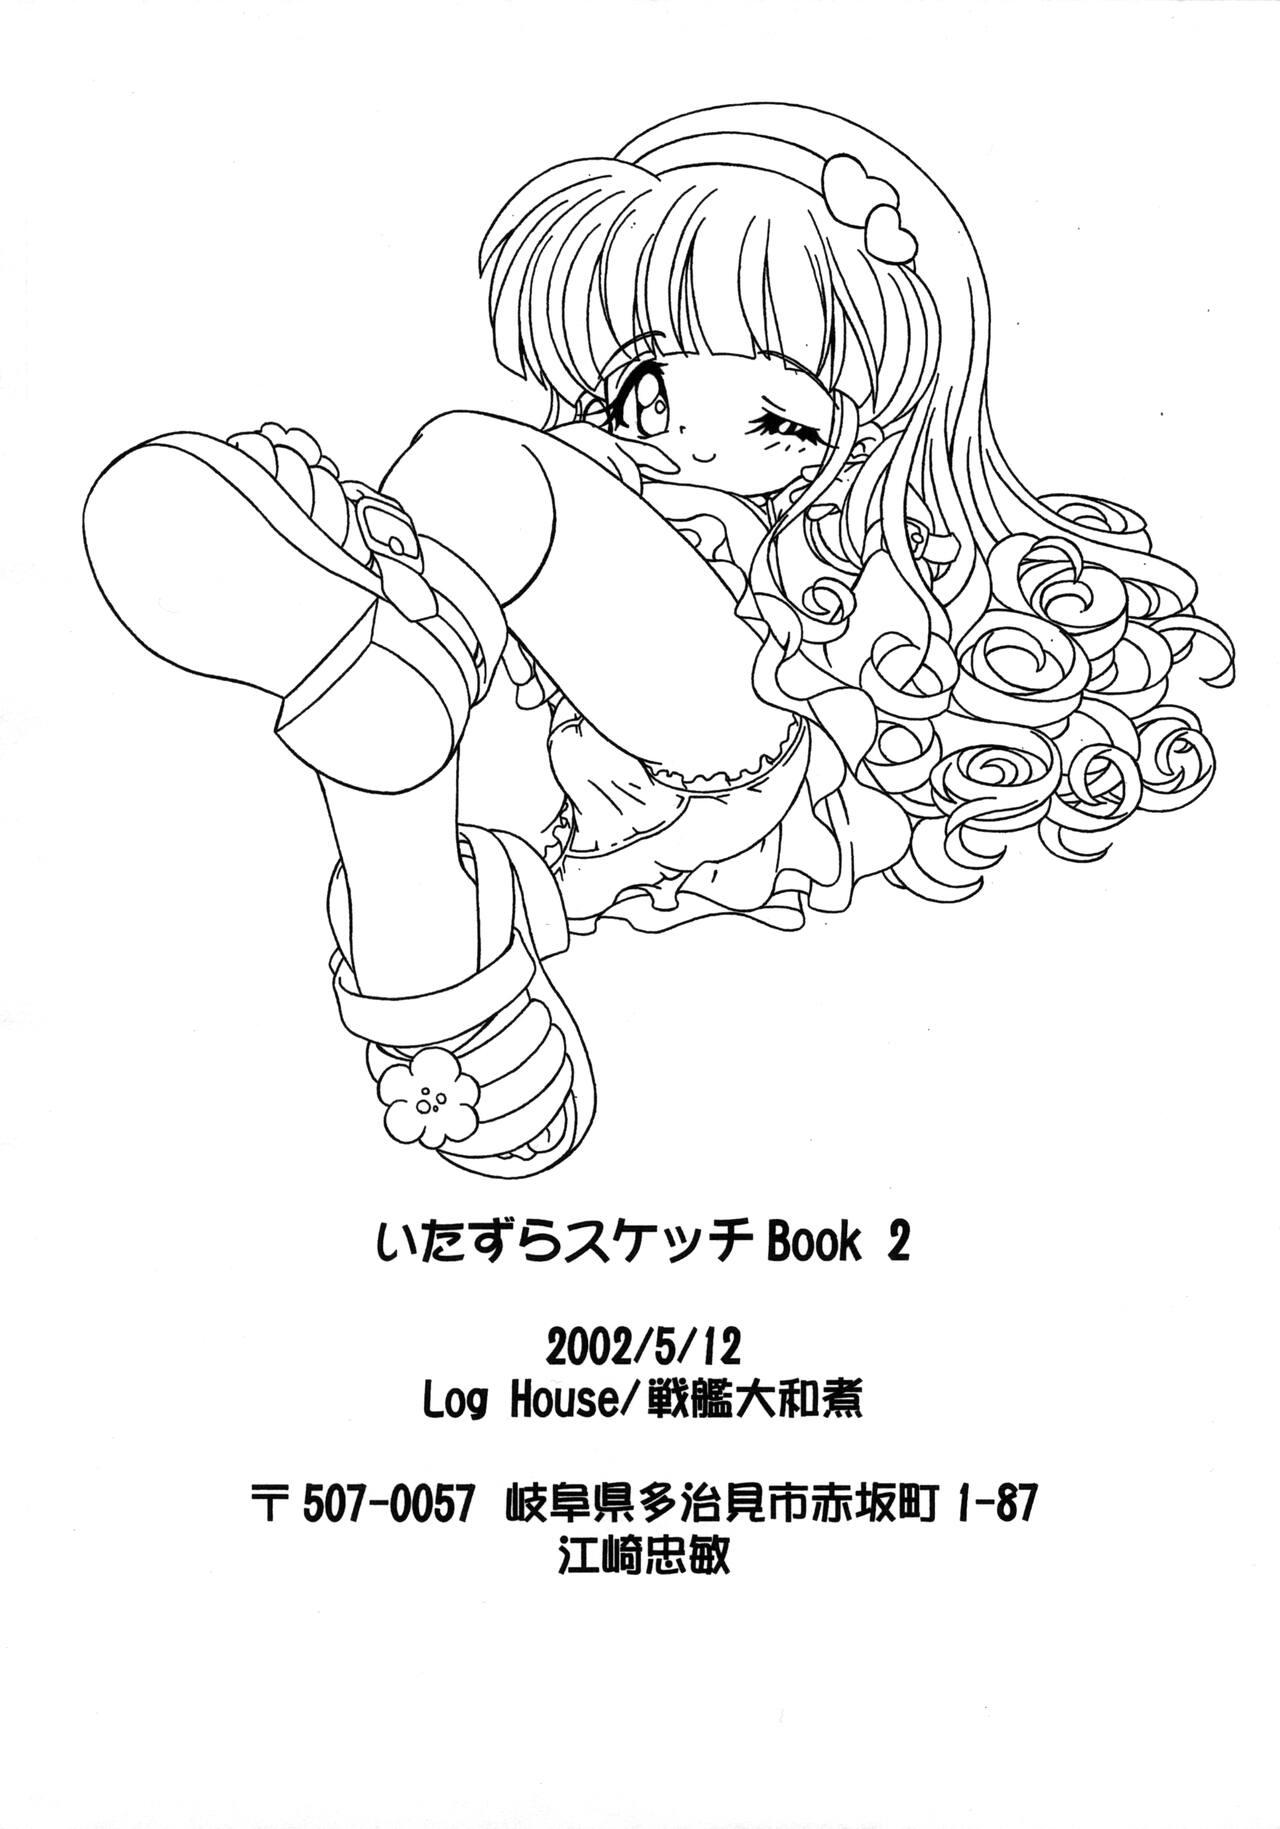 Itazura Sketch Book 2 11